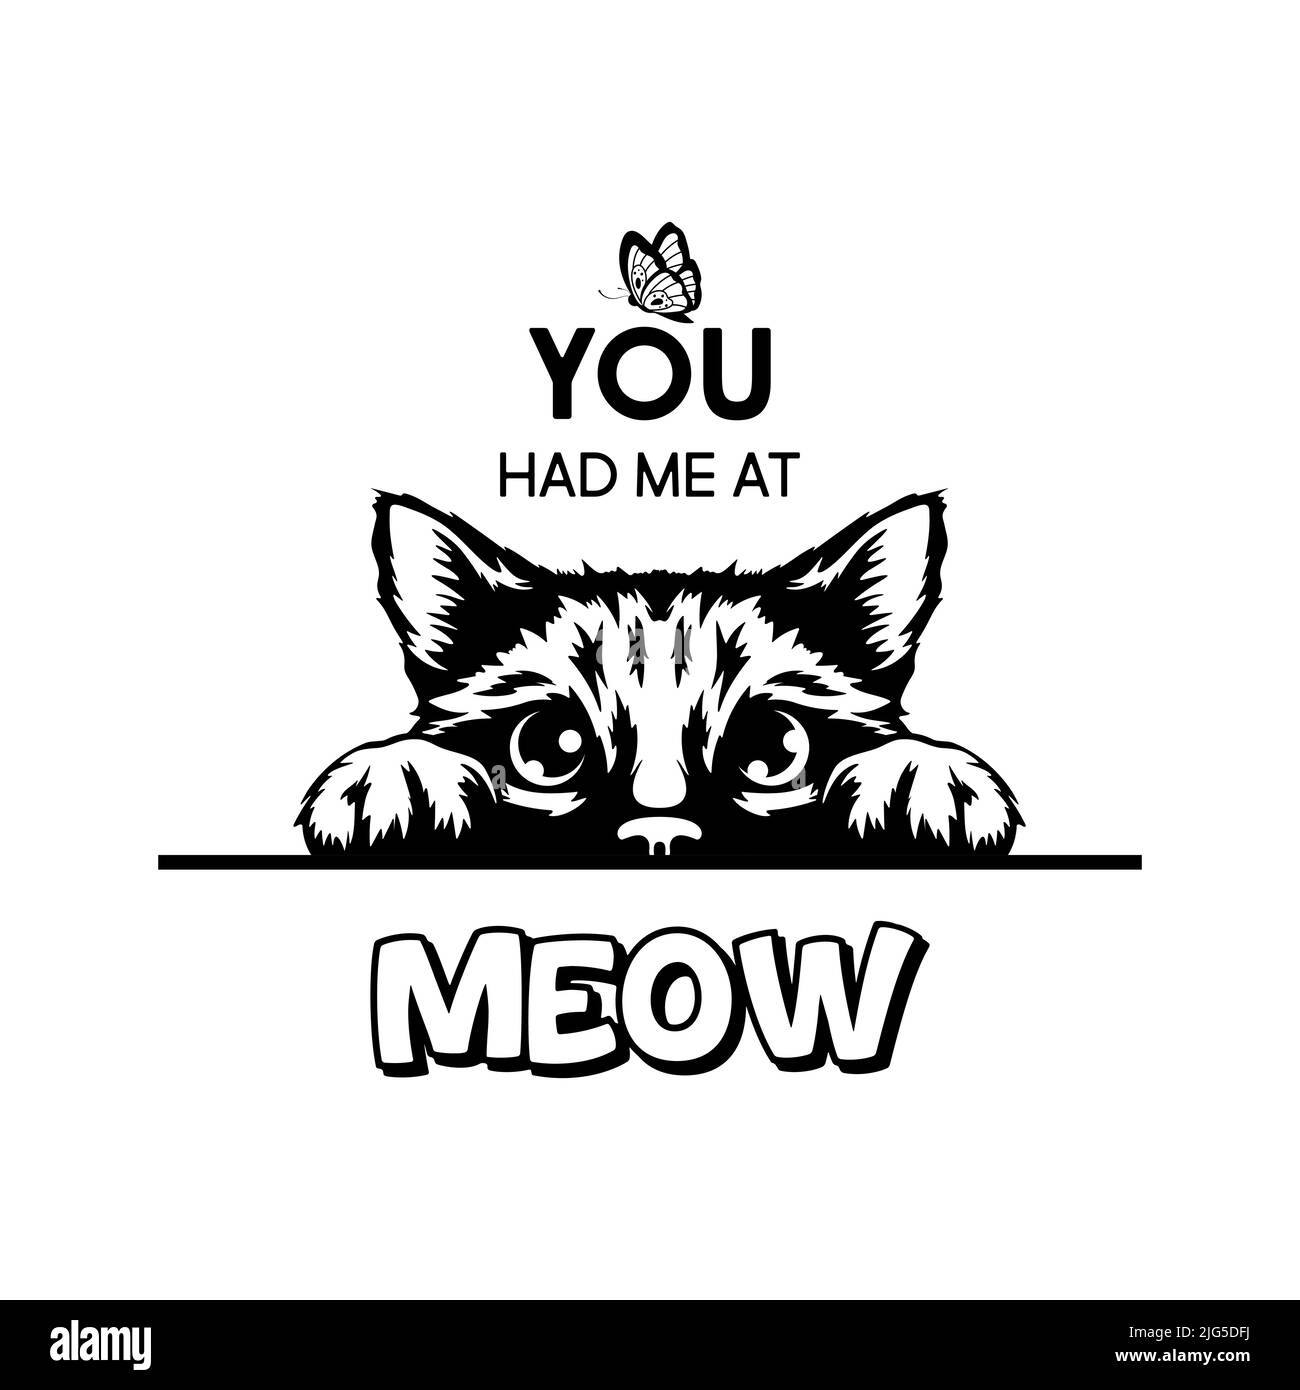 Du Hattest Mich In Meow. Vektor-Poster mit Katze Zitat und monochrome Hand gezeichnet Schwarz und Weiß versteckt Peeking Cute Kitten. Funny Kitten ist Peeking and Stock Vektor